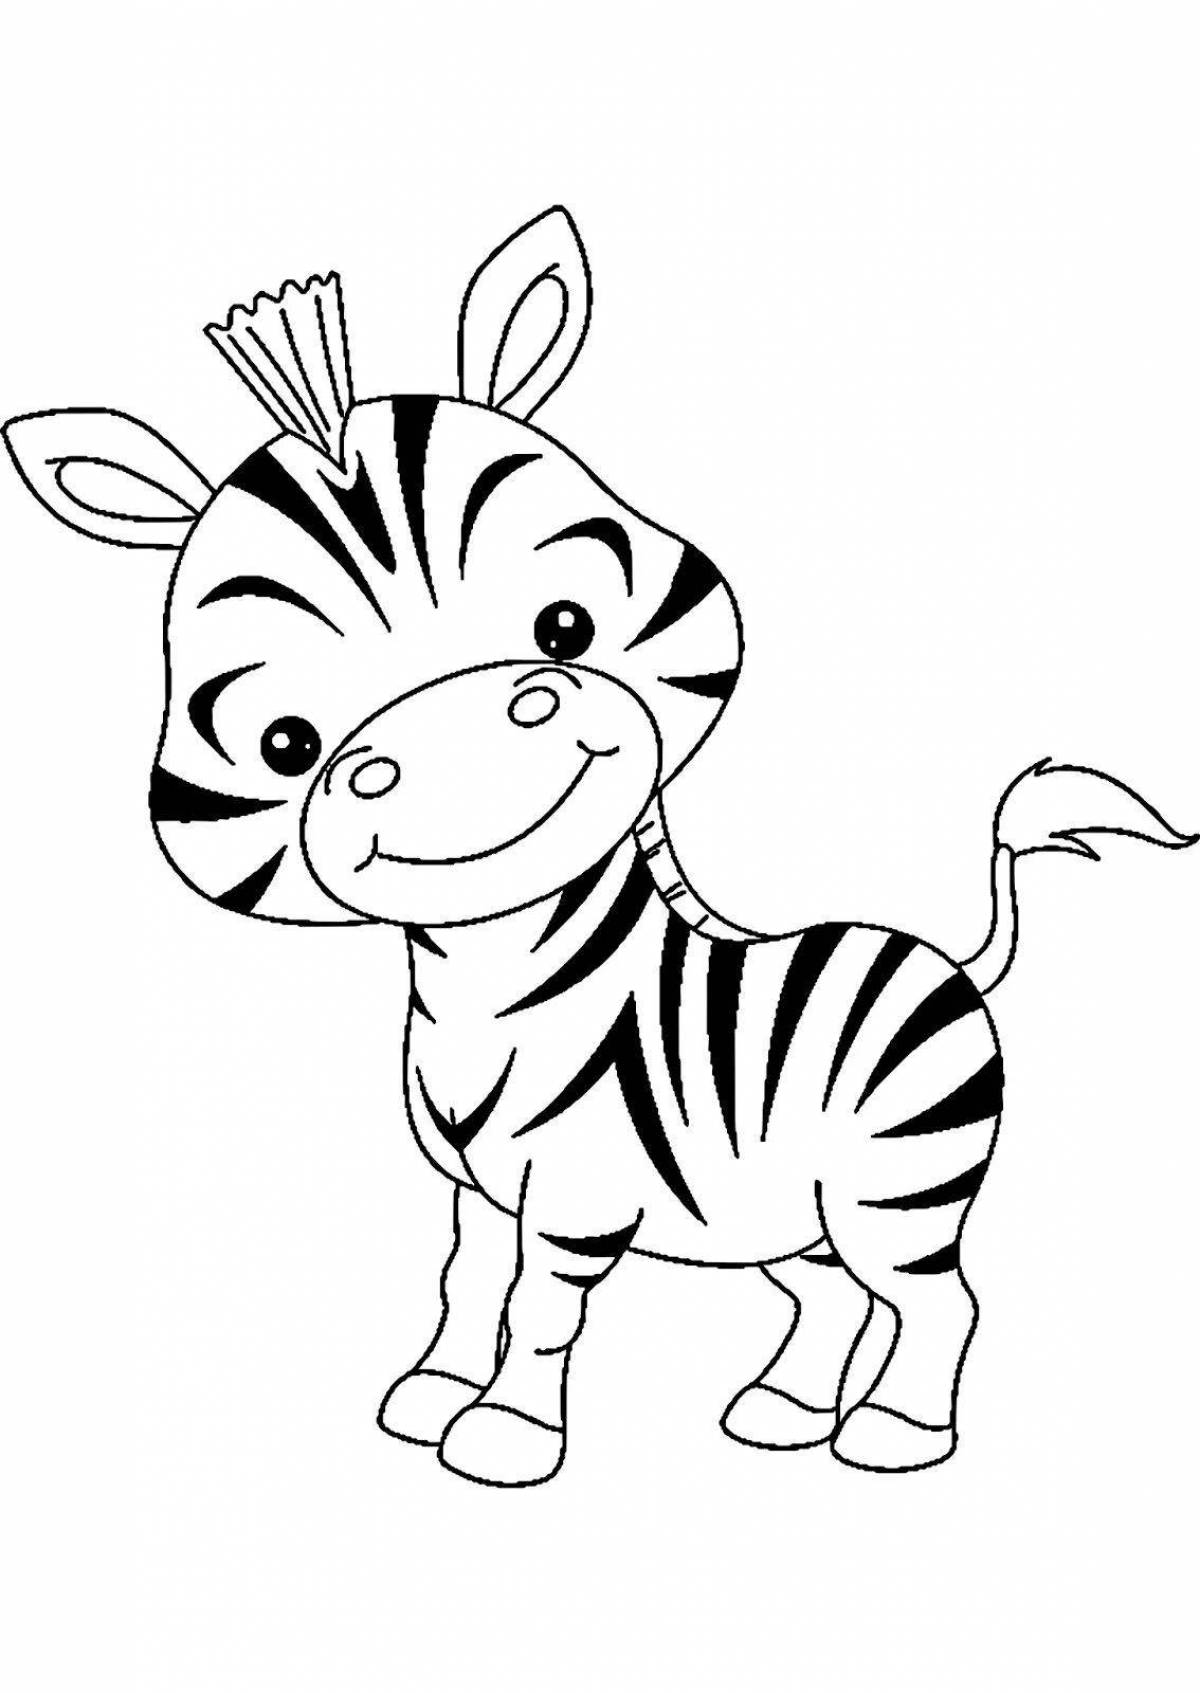 Прекрасный рисунок зебры